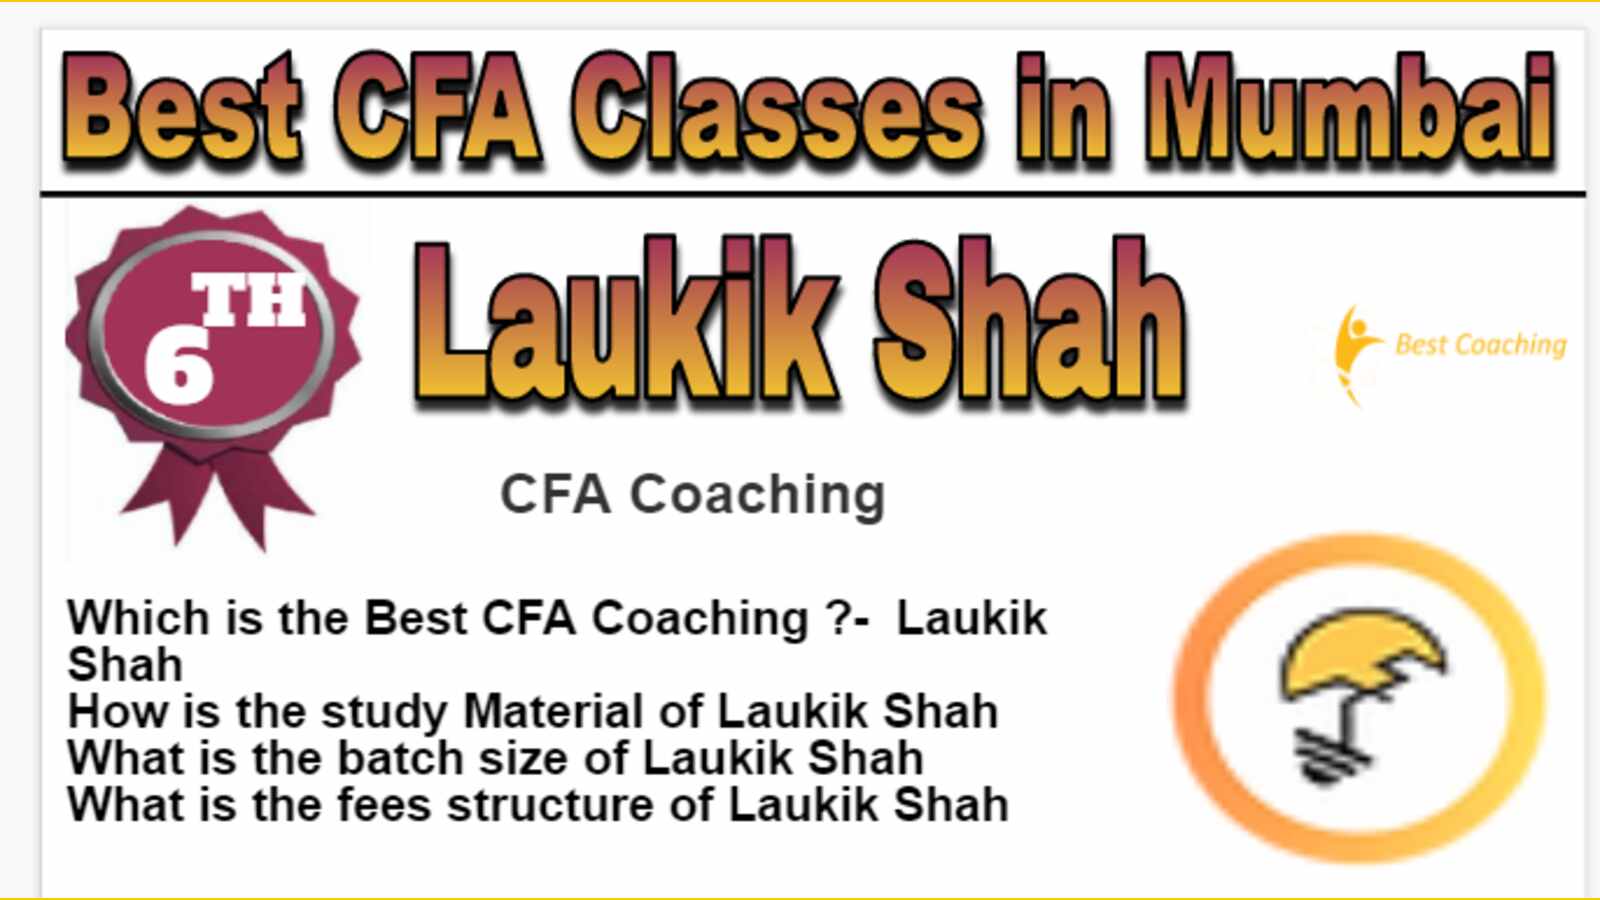 Rank 6 Best CFA Classes in Mumbai